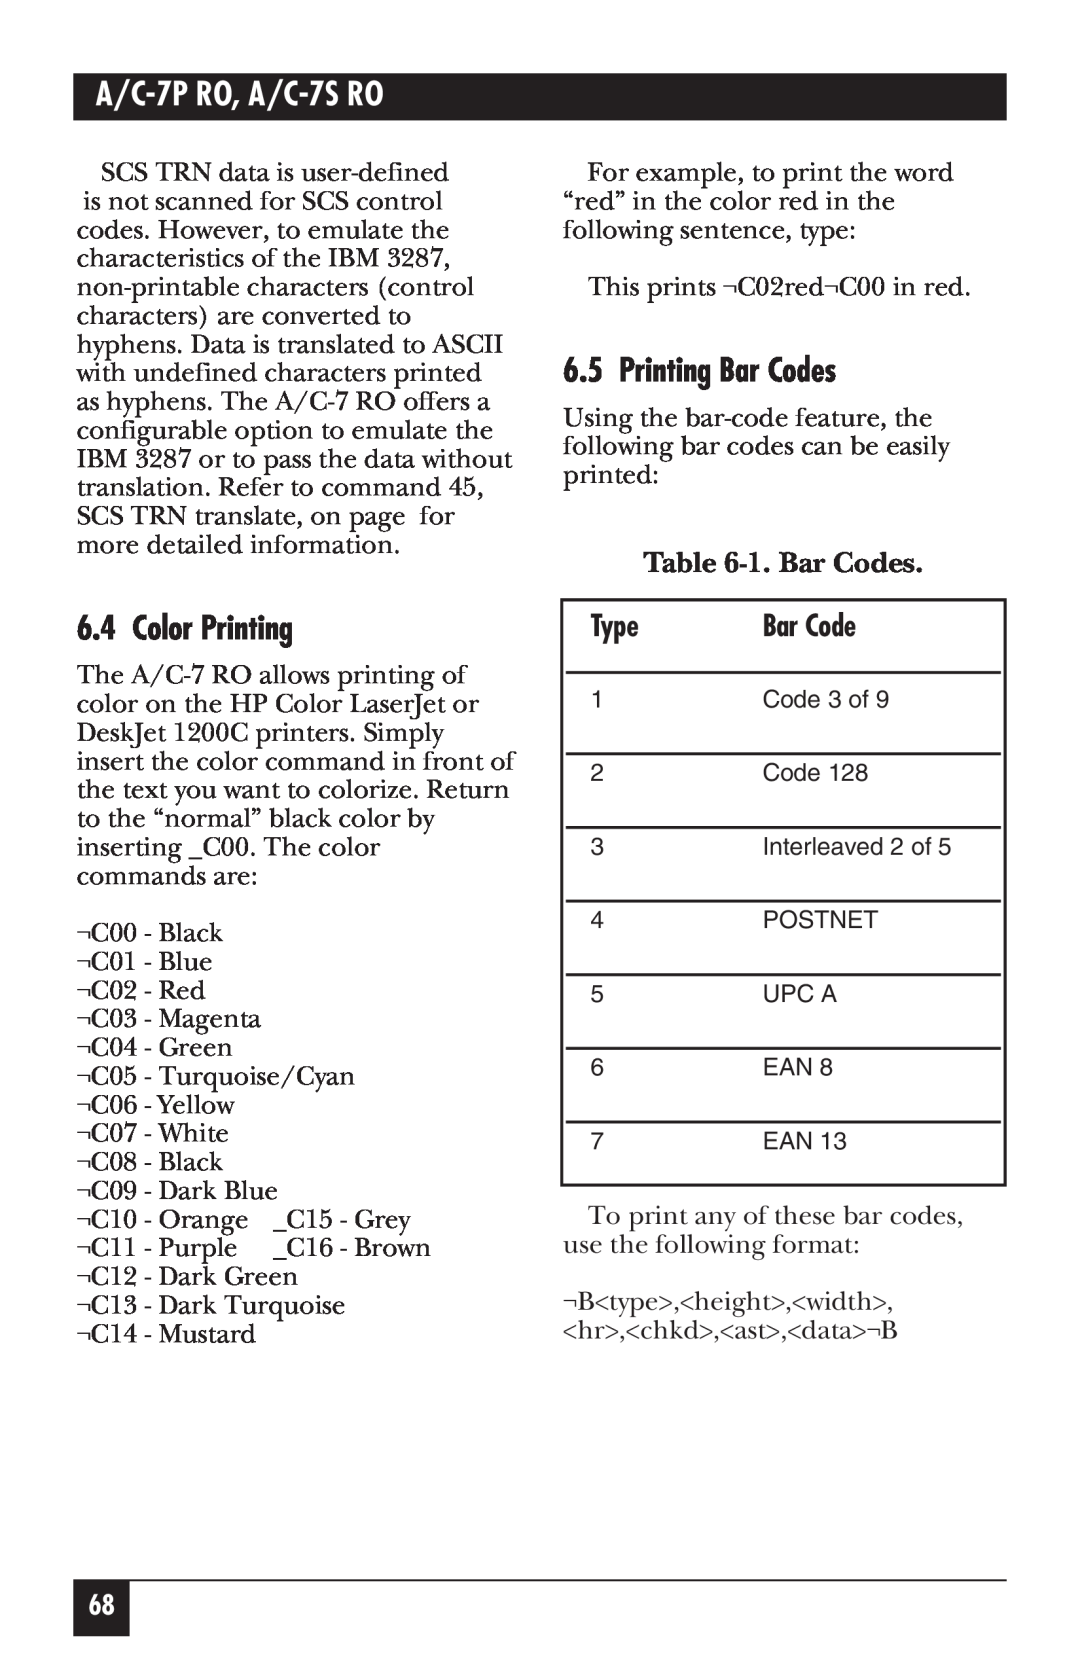 Black Box manual Color Printing, Printing Bar Codes, 1. Bar Codes, A/C-7P RO, A/C-7S RO 